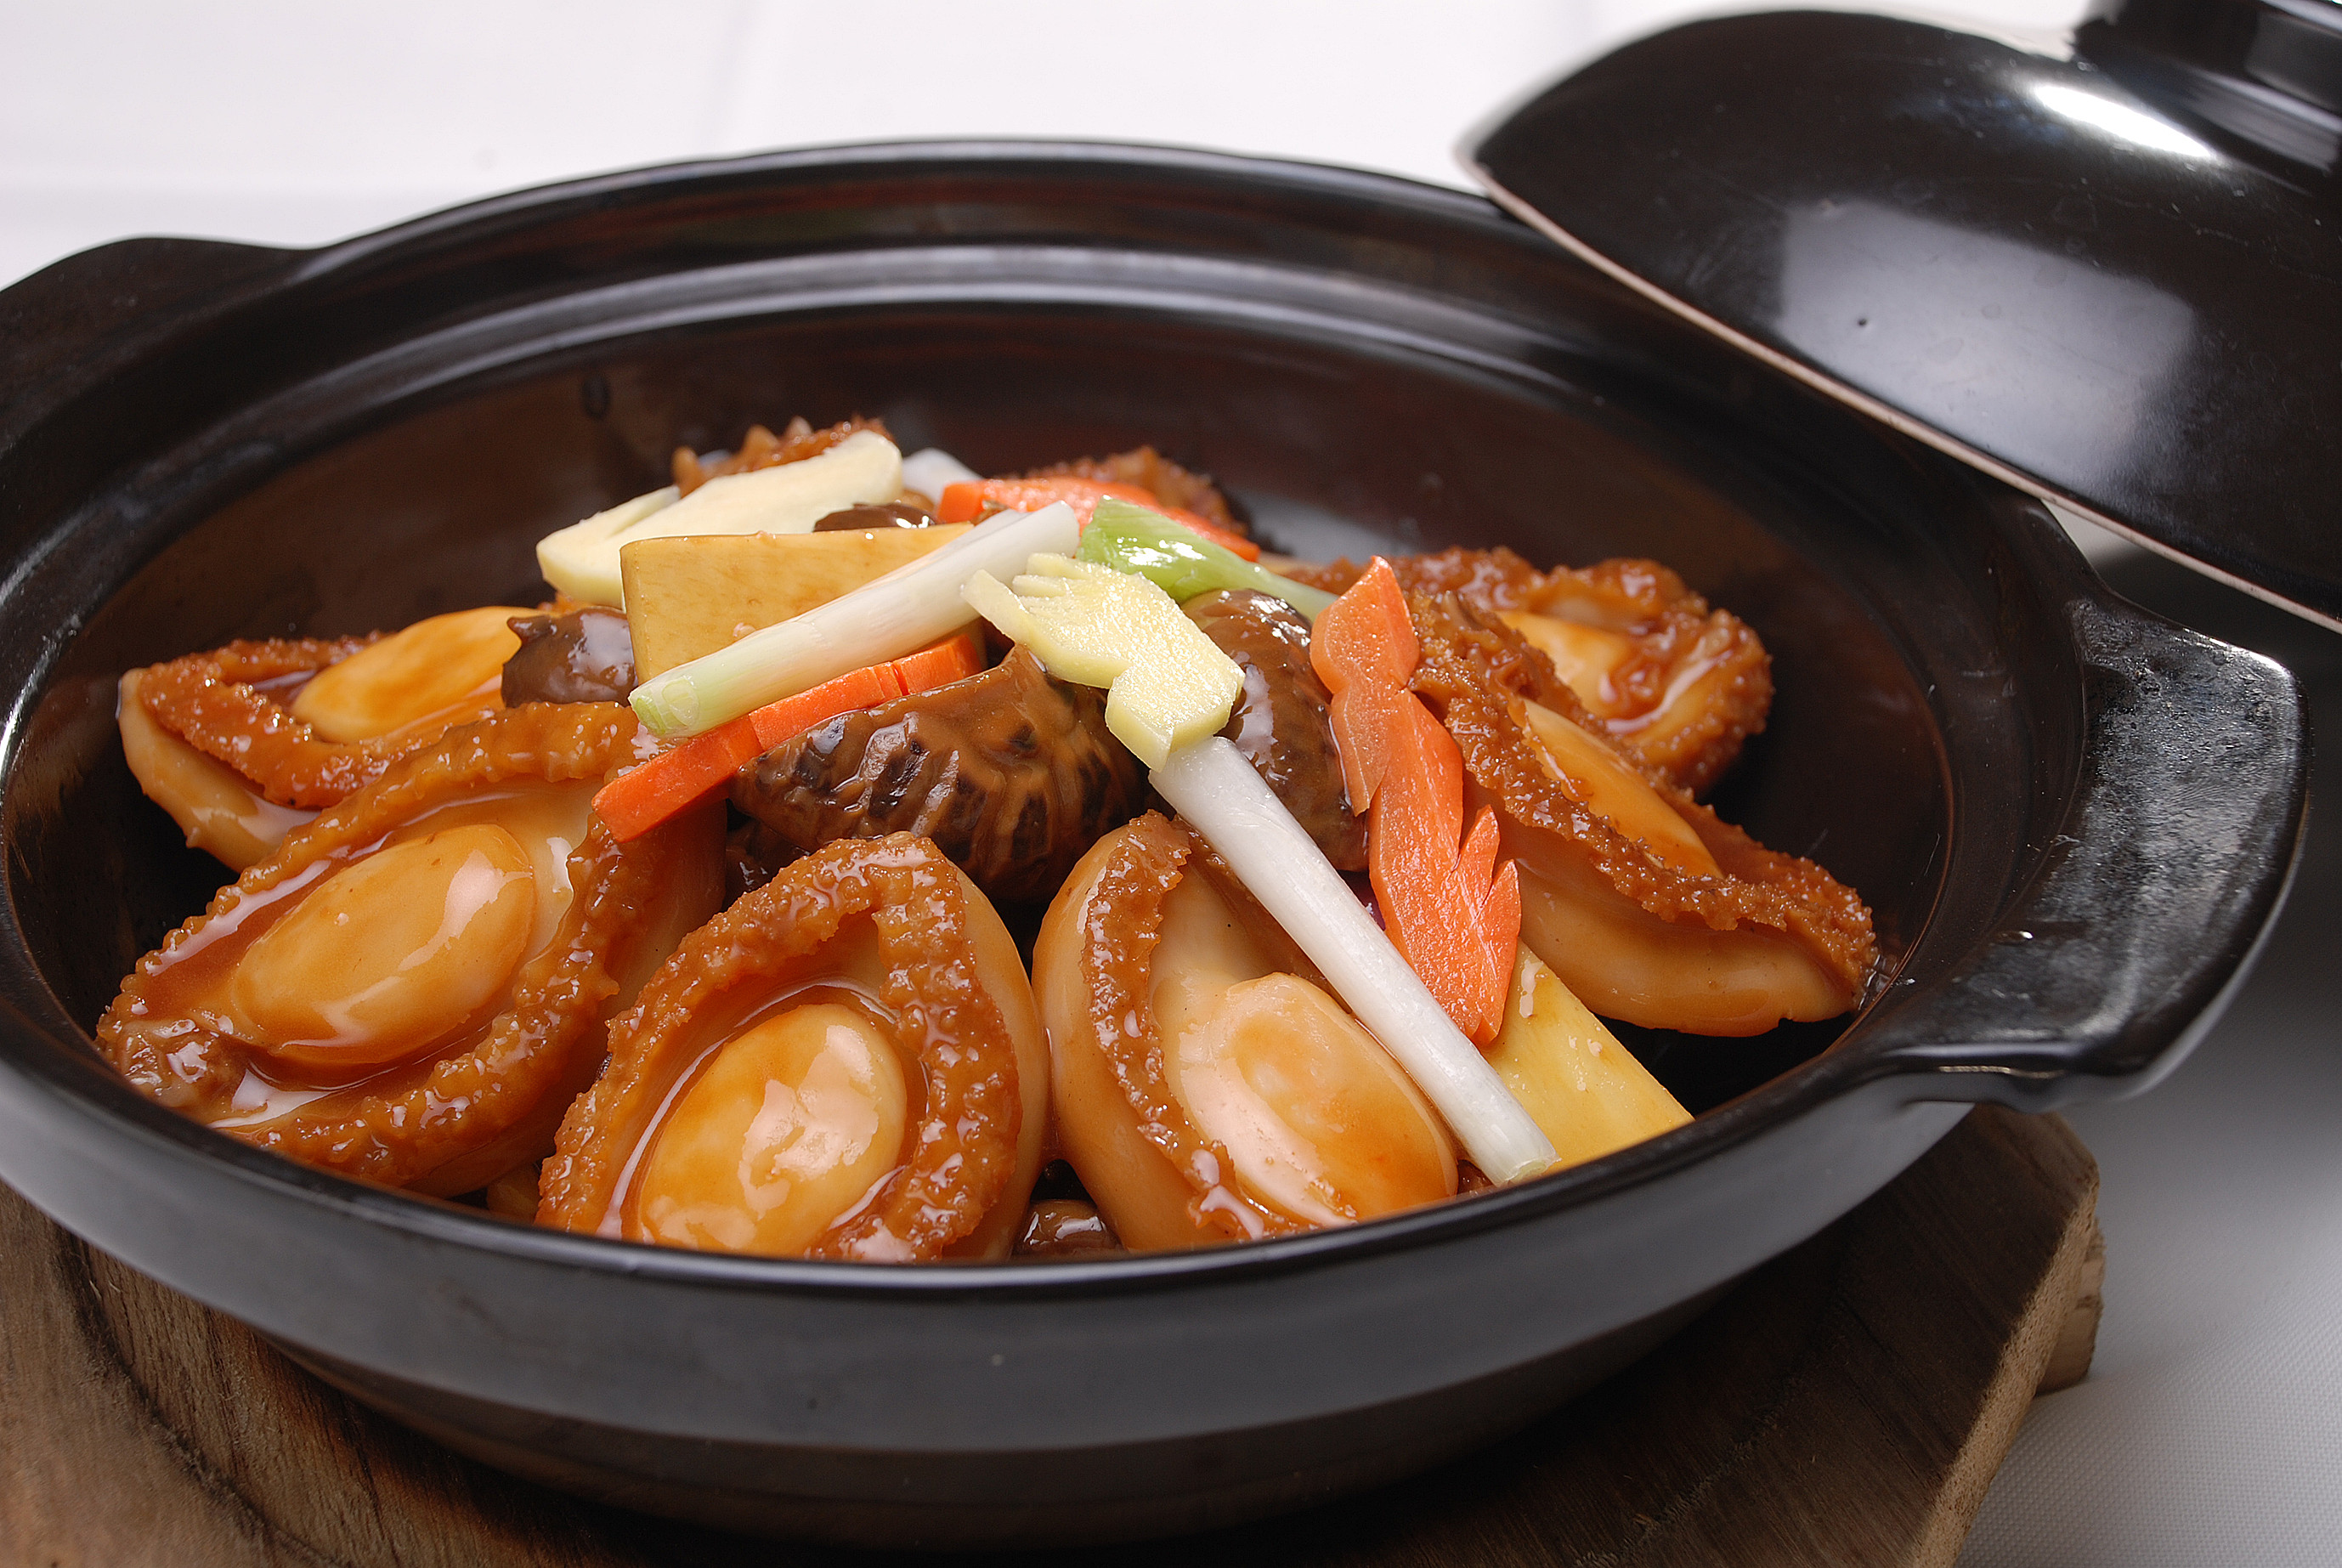 砂锅焗鲜鲍:传统焗鲜鲍和潮菜传统"红炆鲍鱼"不同之处,在于后者主料是